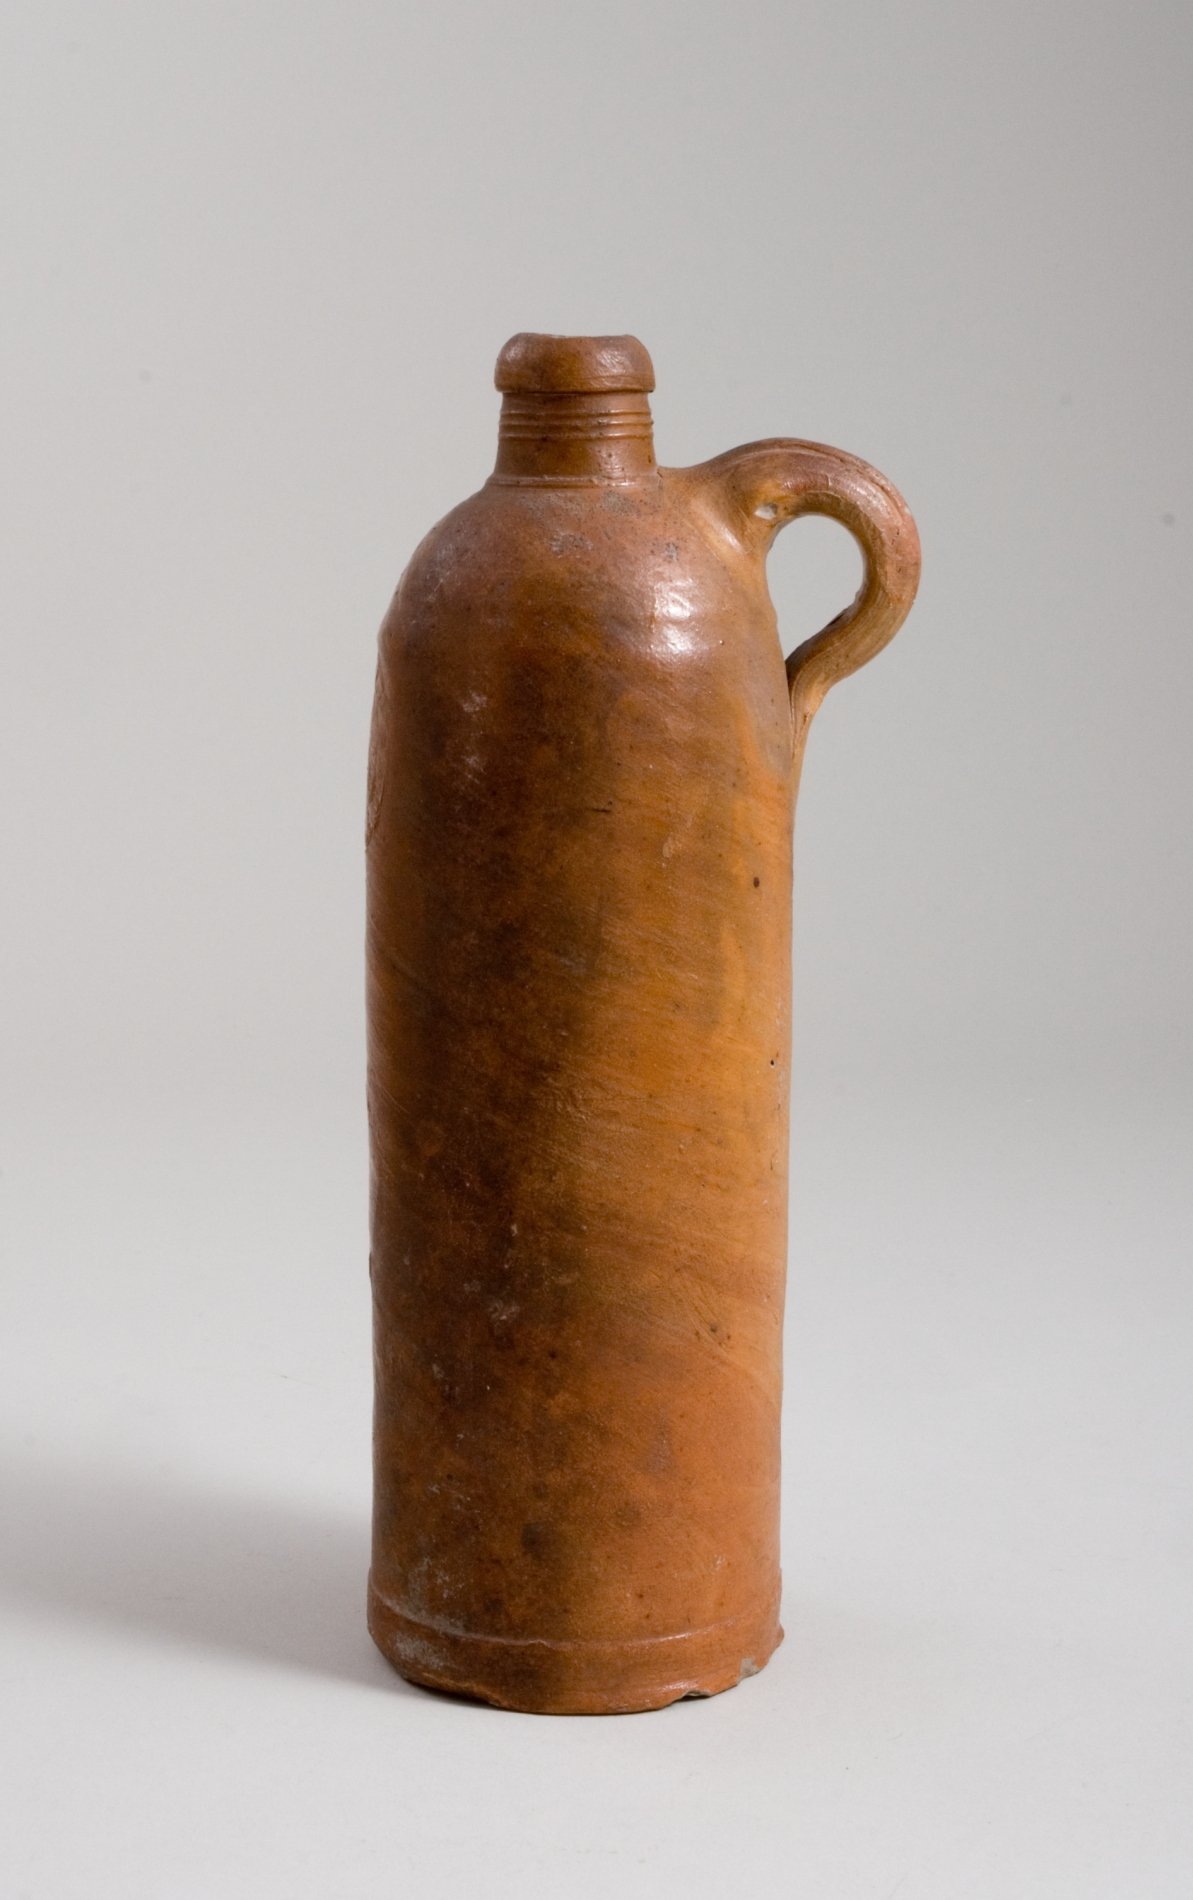 Mineralwasserflasche "Selters-Nassau" (Stiftung Domäne Dahlem - Landgut und Museum, Weiternutzung nur mit Genehmigung des Museums CC BY-NC-SA)